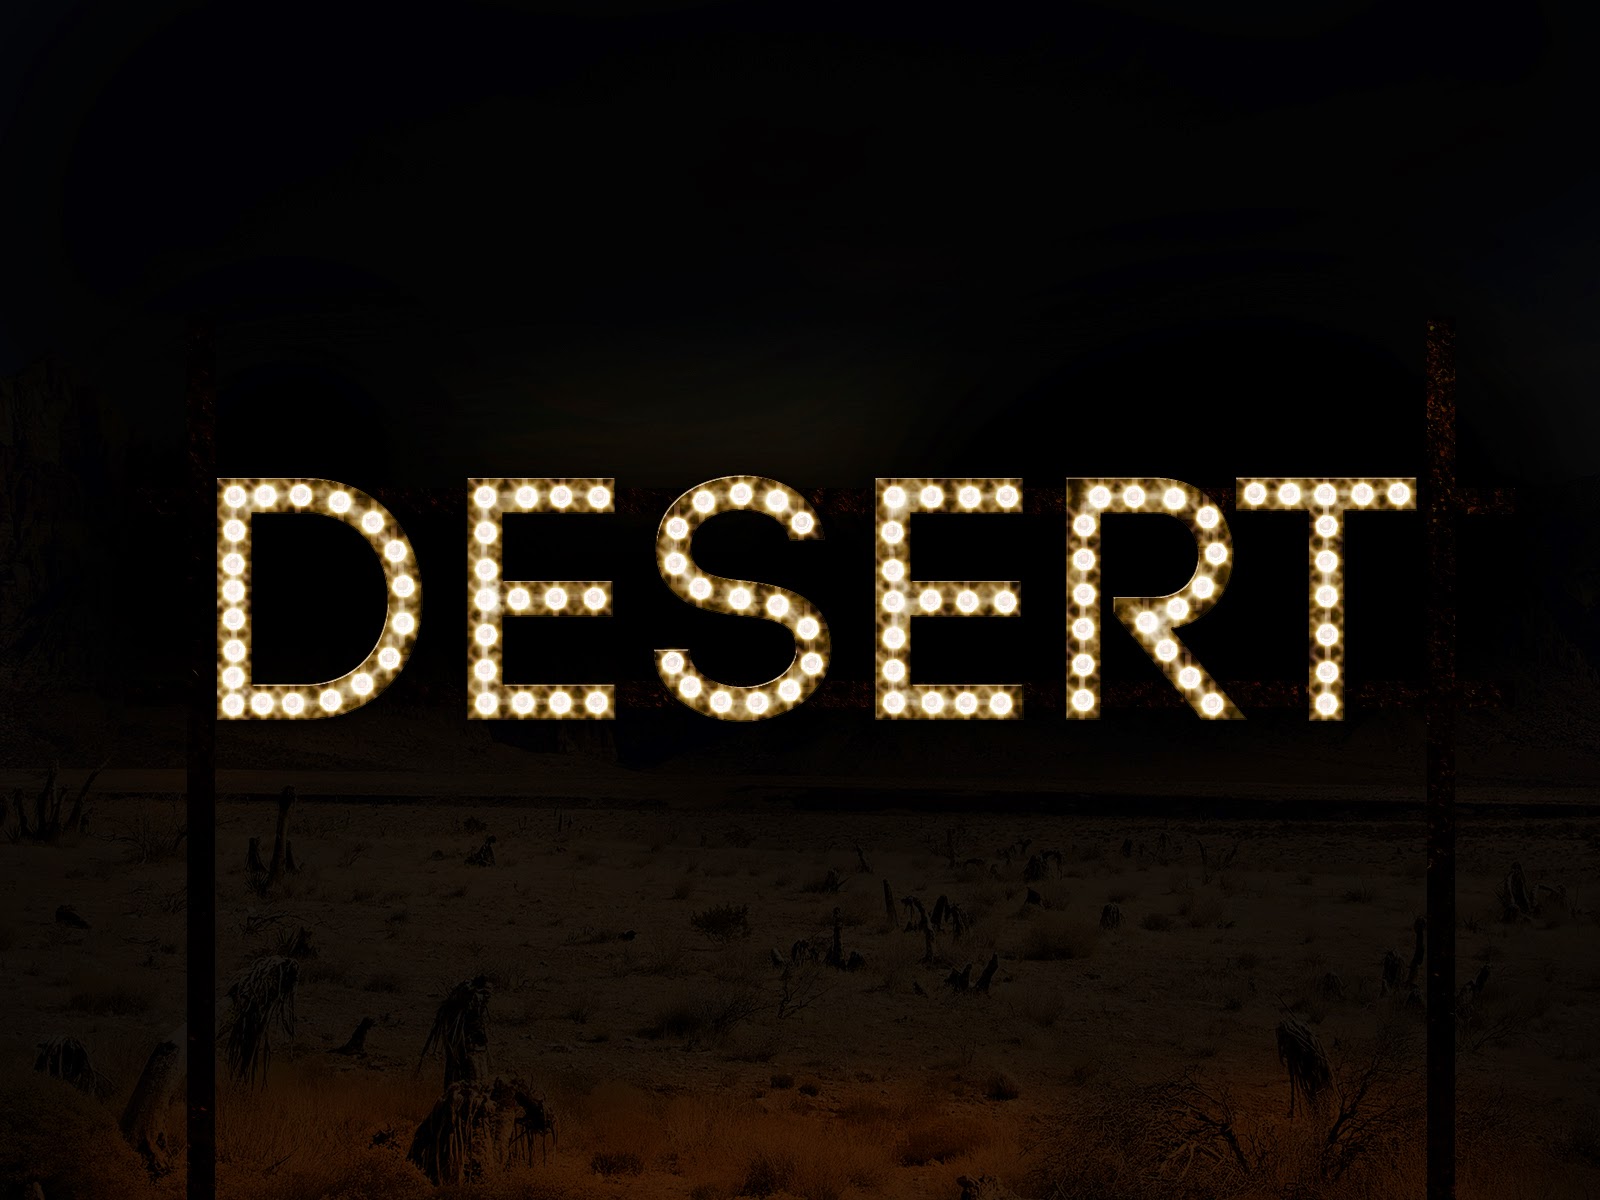 desert lights